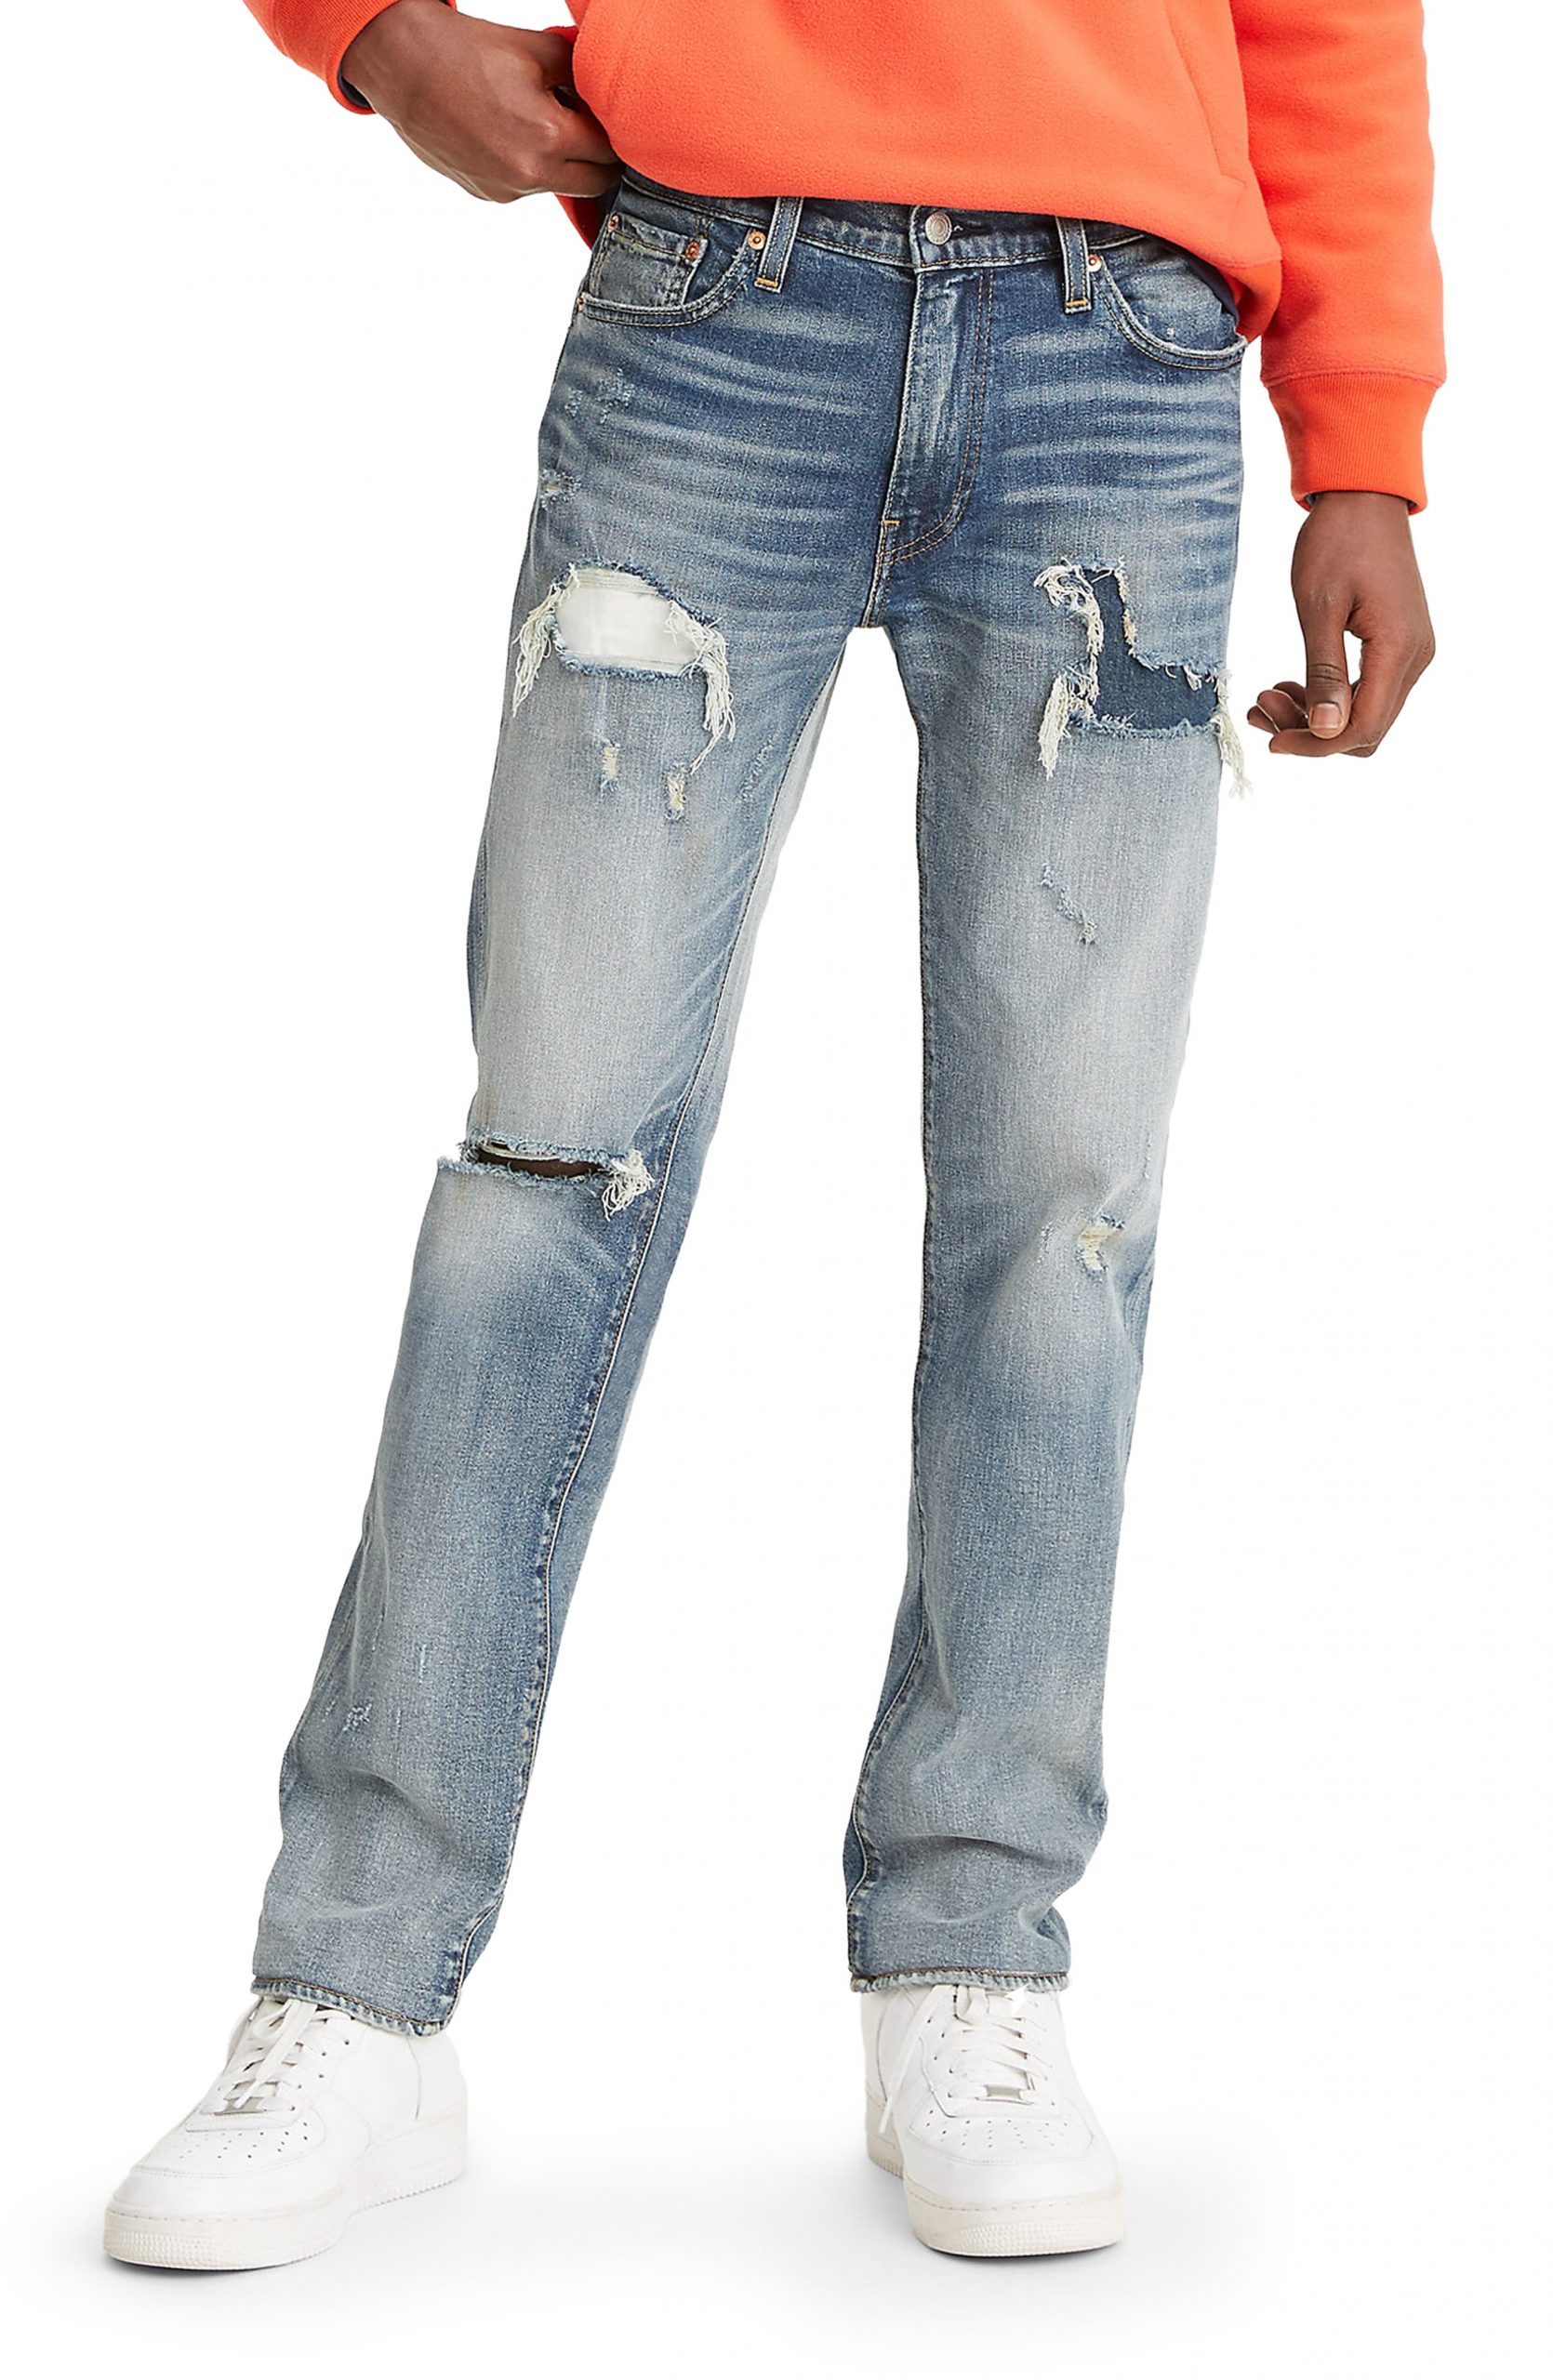 levis jeans size 30